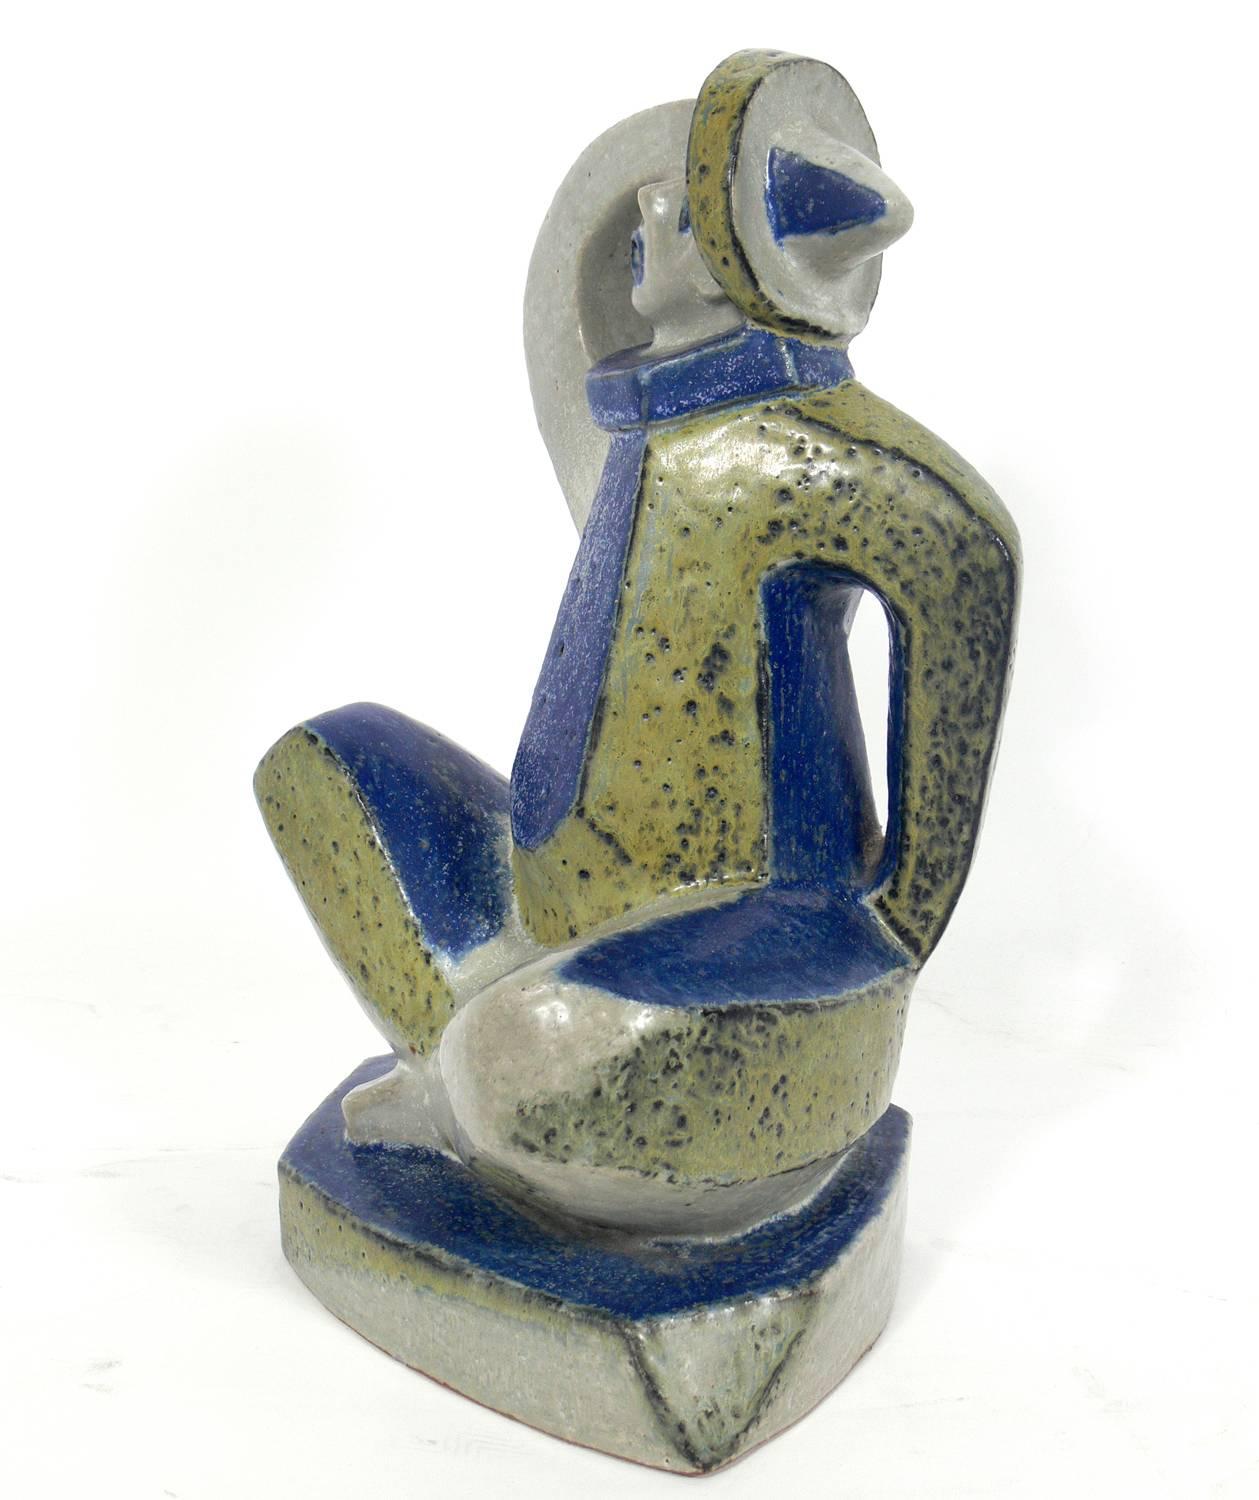 Cubist figural ceramic sculpture by Jorgen Mogensen for Royal Copenhagen, Denmark, circa 1950s.